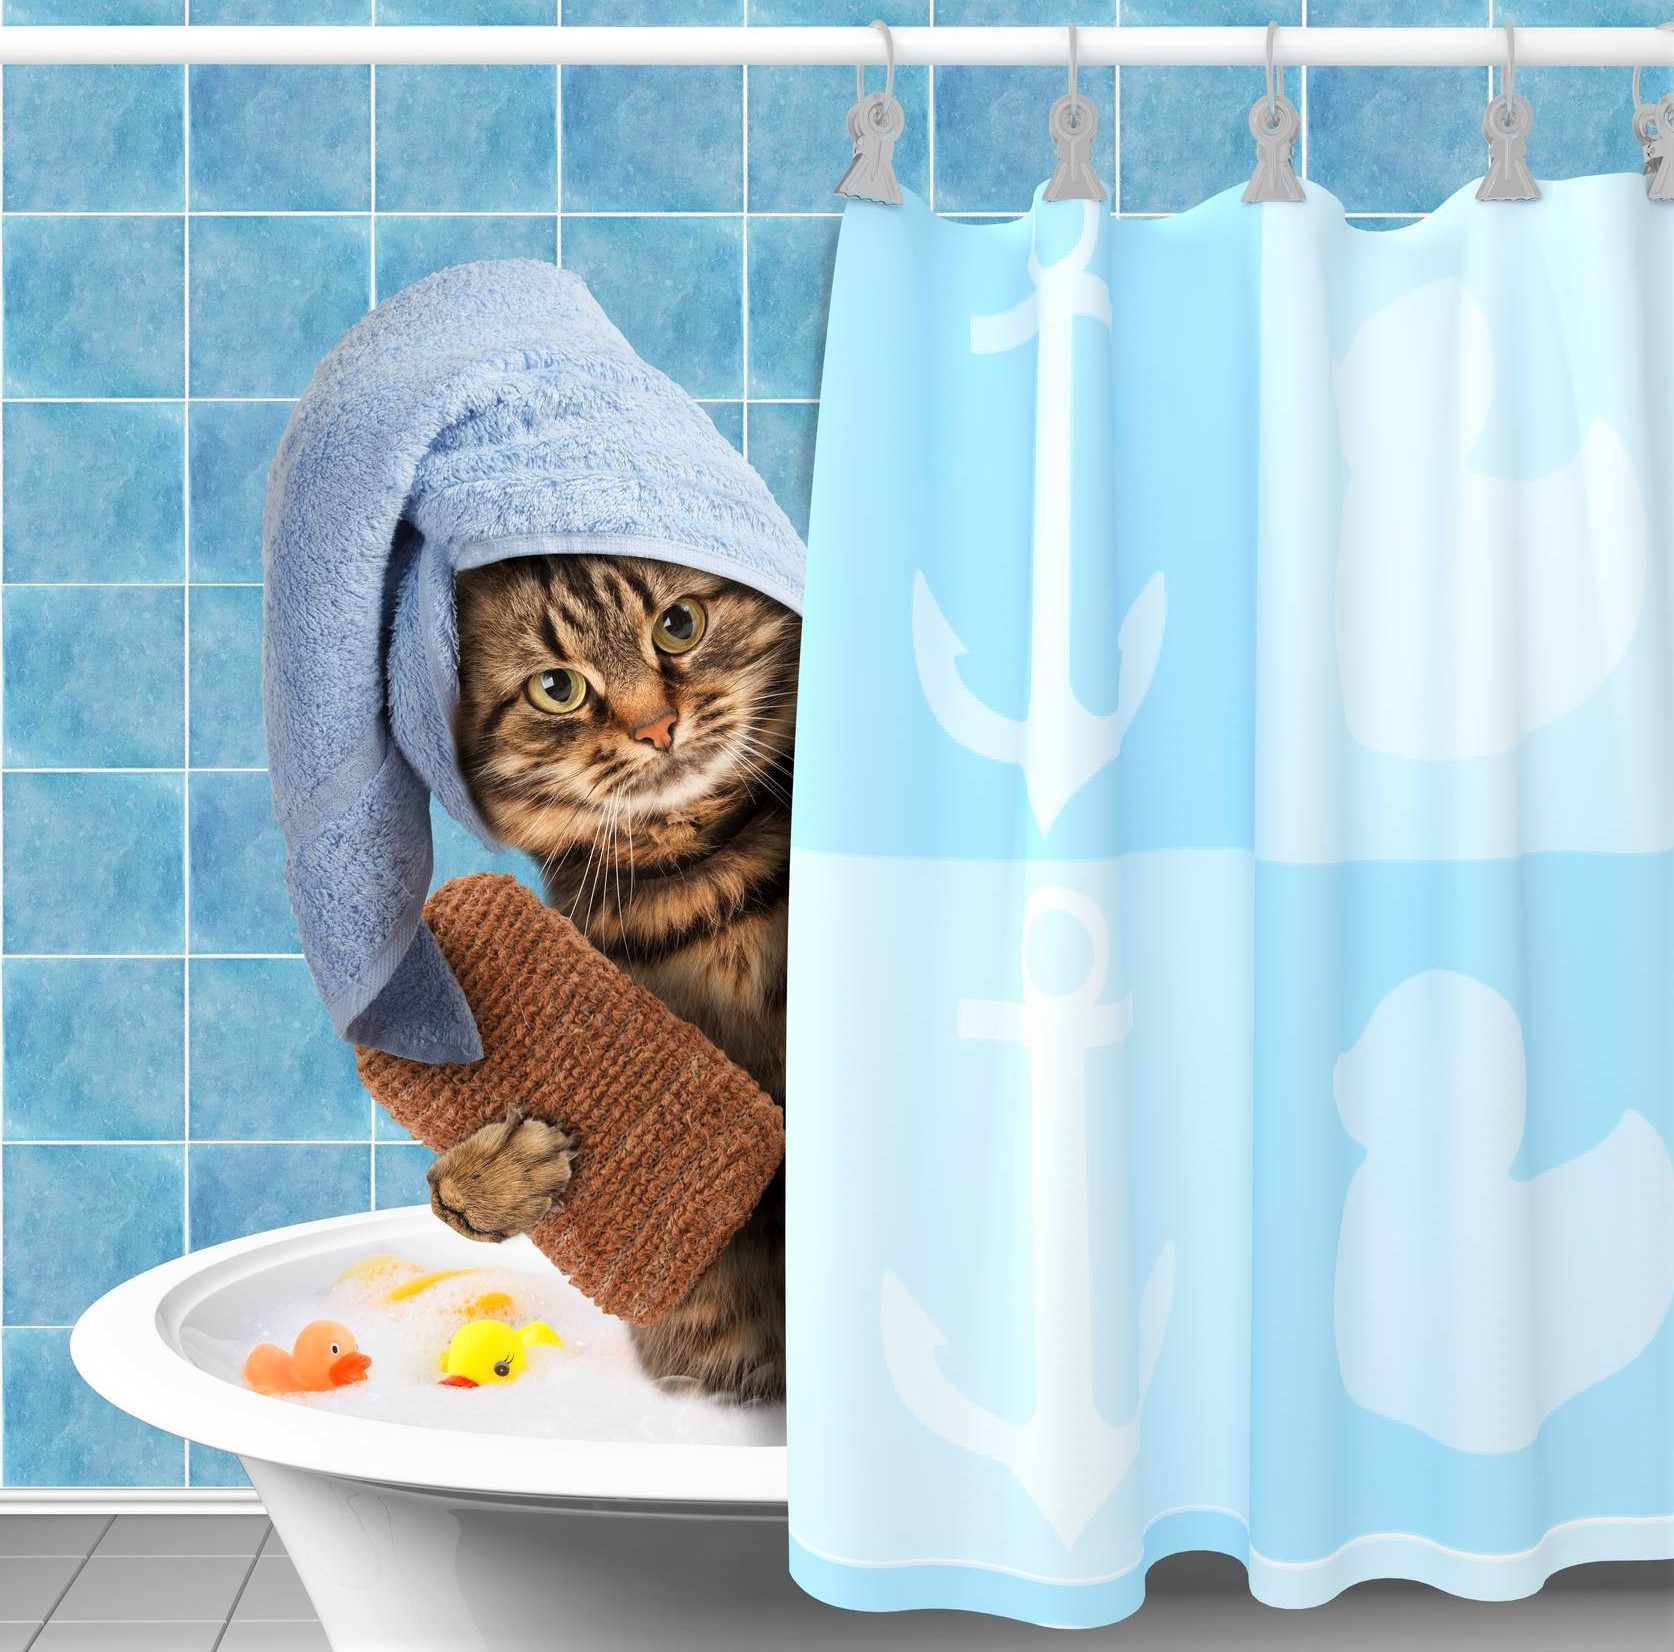 Comment laver un chat ?